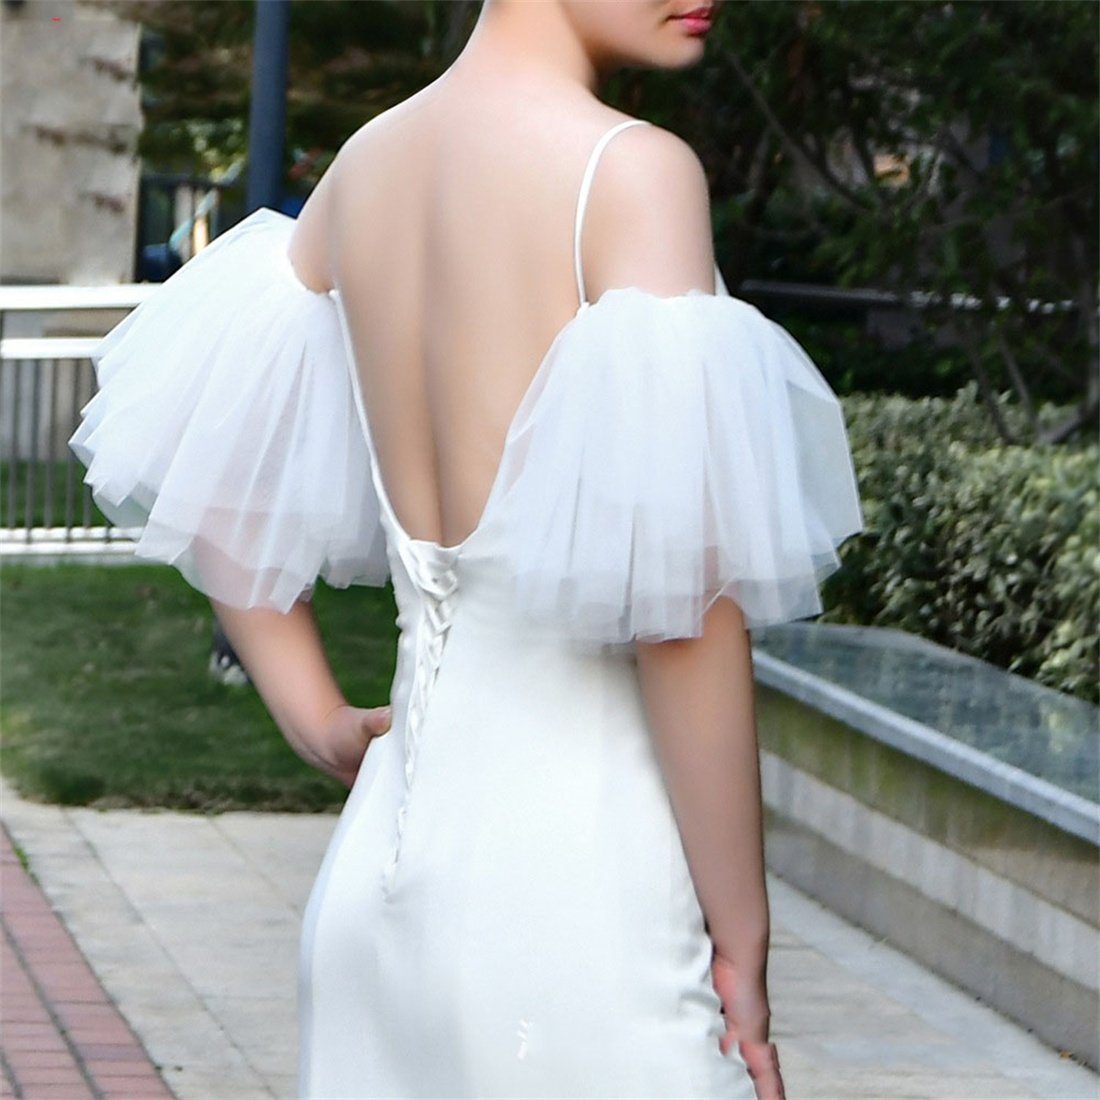 DÖRÖY Schleier Brautkleid mehrlagiges weißes Kleid Schal Accessoires mit mit Ärmeln